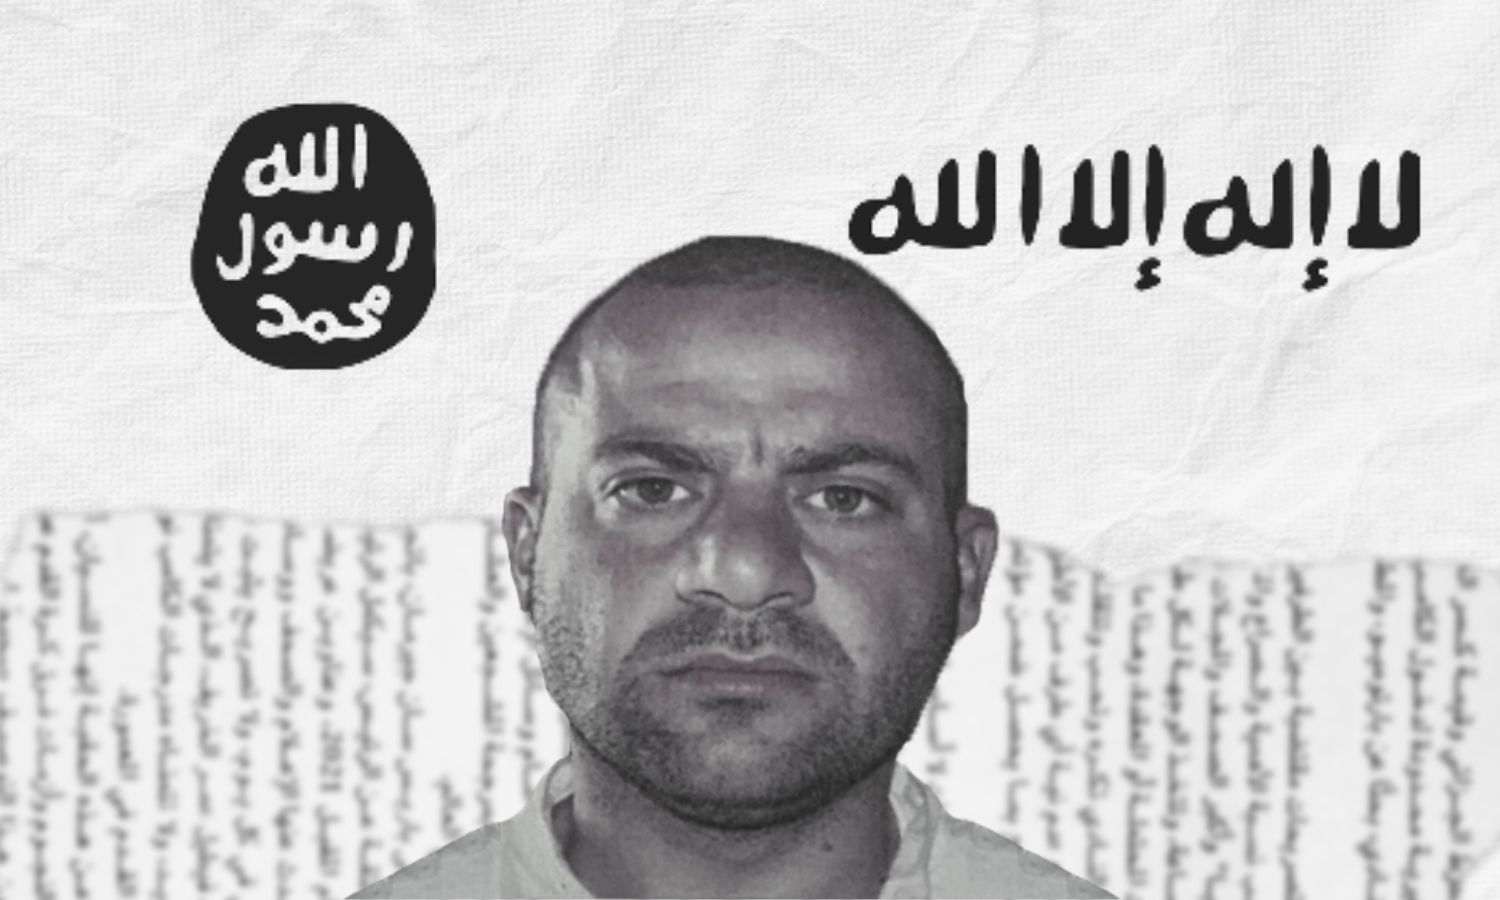 زعيم #داعش_الارهابي عبد الله قردش في سوريا المُلقب بالبروفيسور قُتل ام انتحر ؟